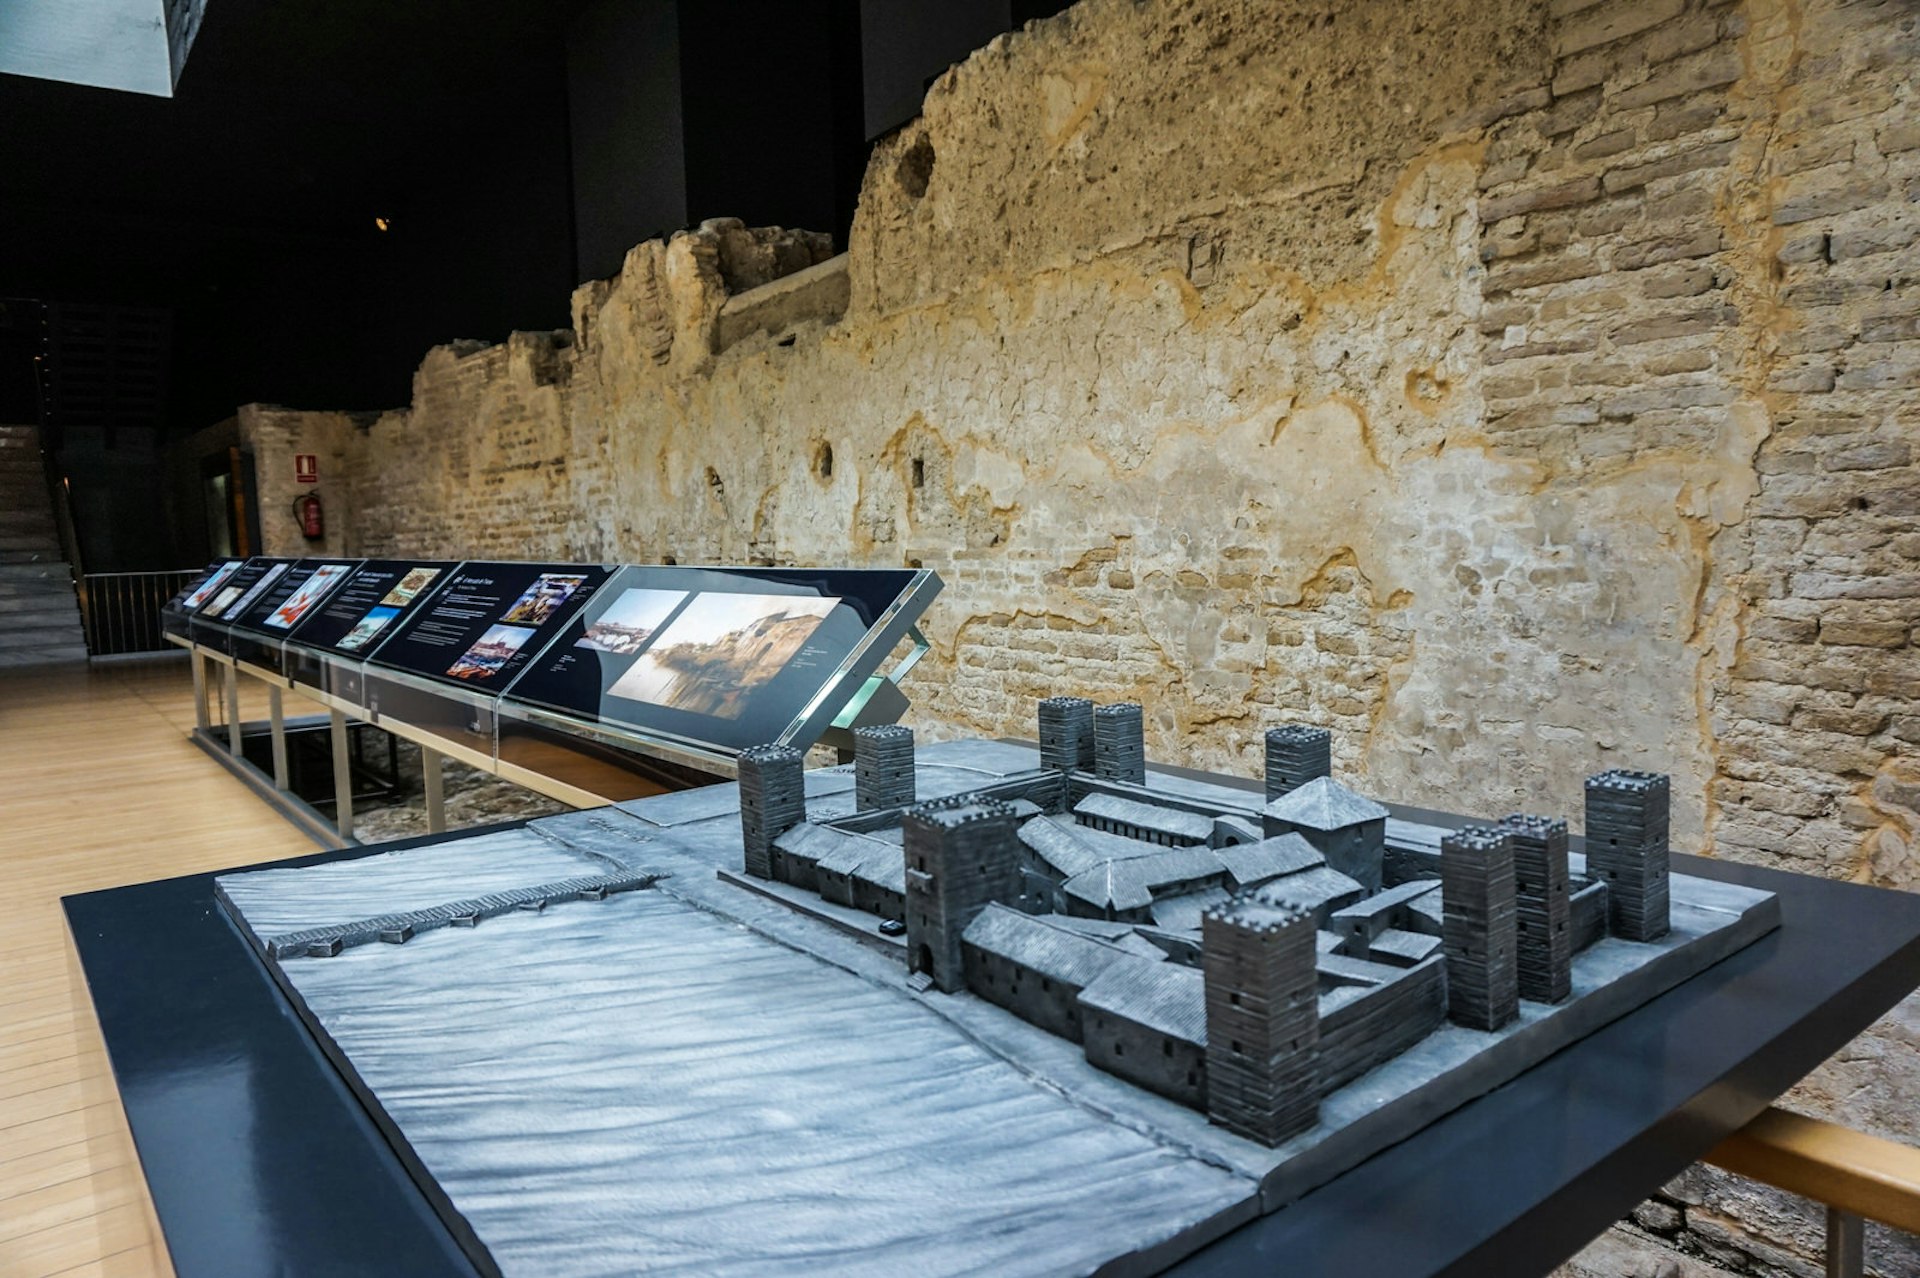 The Inquisition museum inside the Castillo de San Jorge © Brendan Sainsbury / Lonely Planet